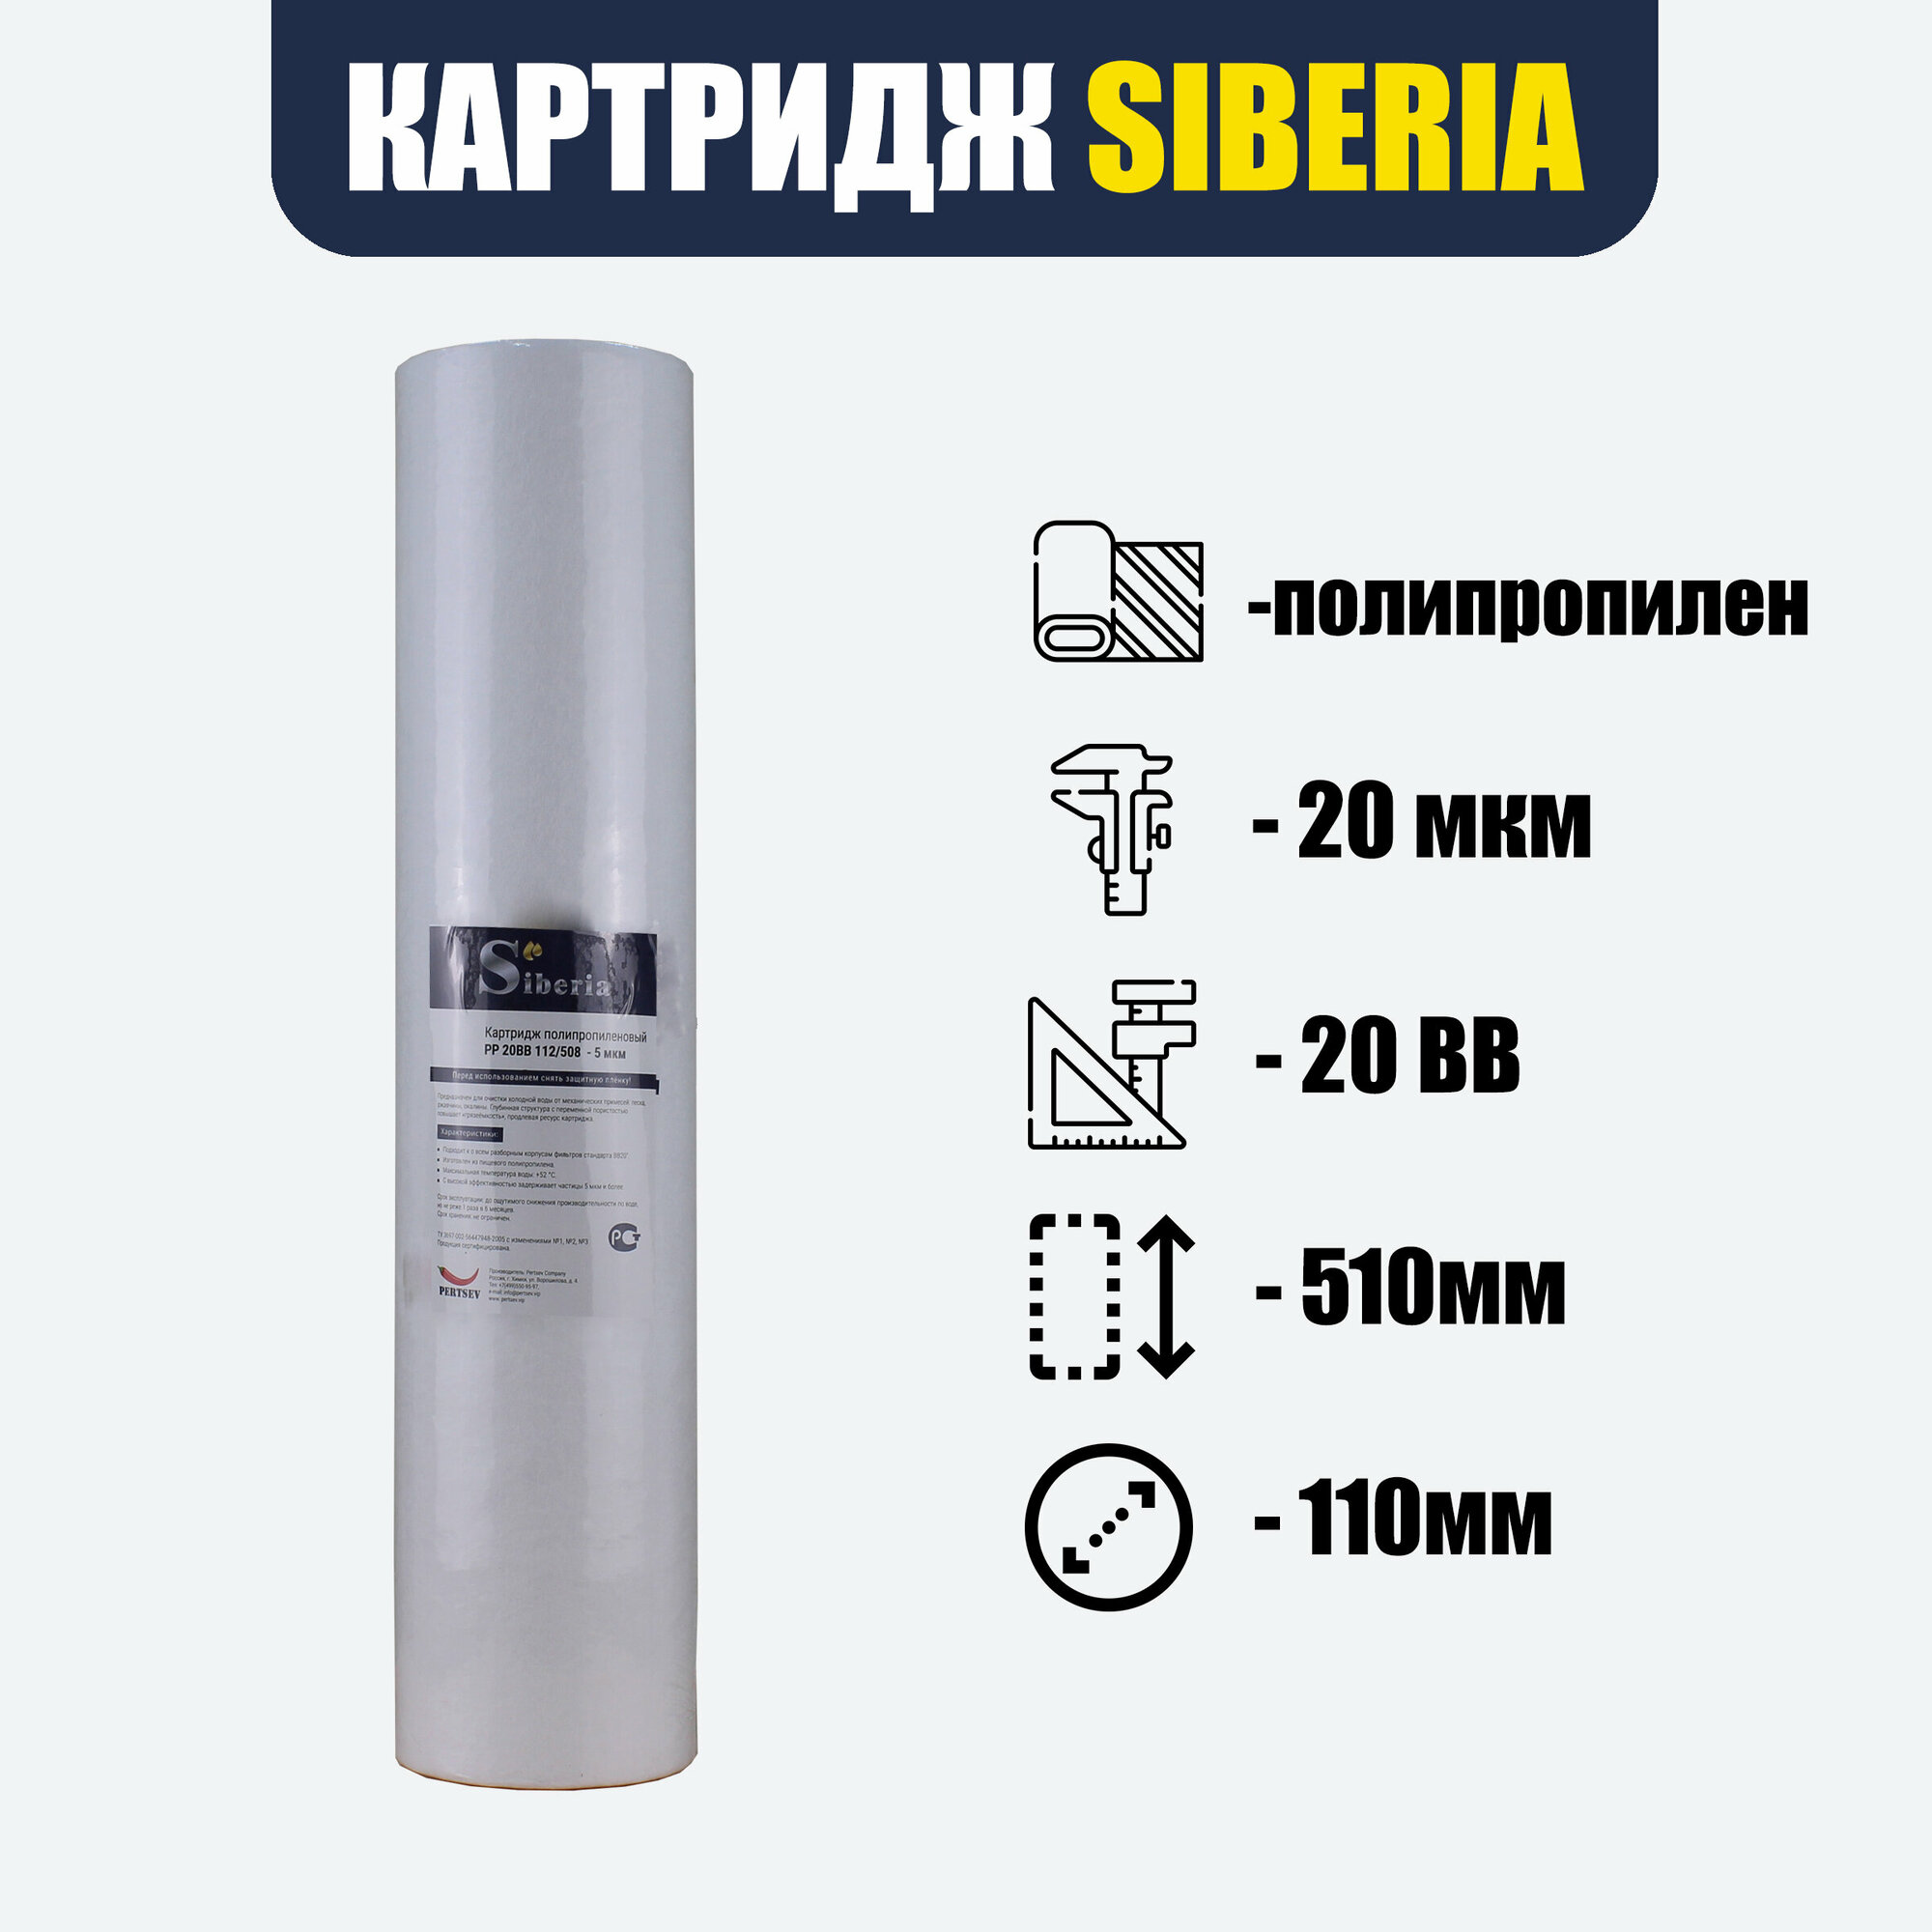 Полипропиленовый фильтр SIBERIA для корпуса 20BB, 20 мкм, 1шт